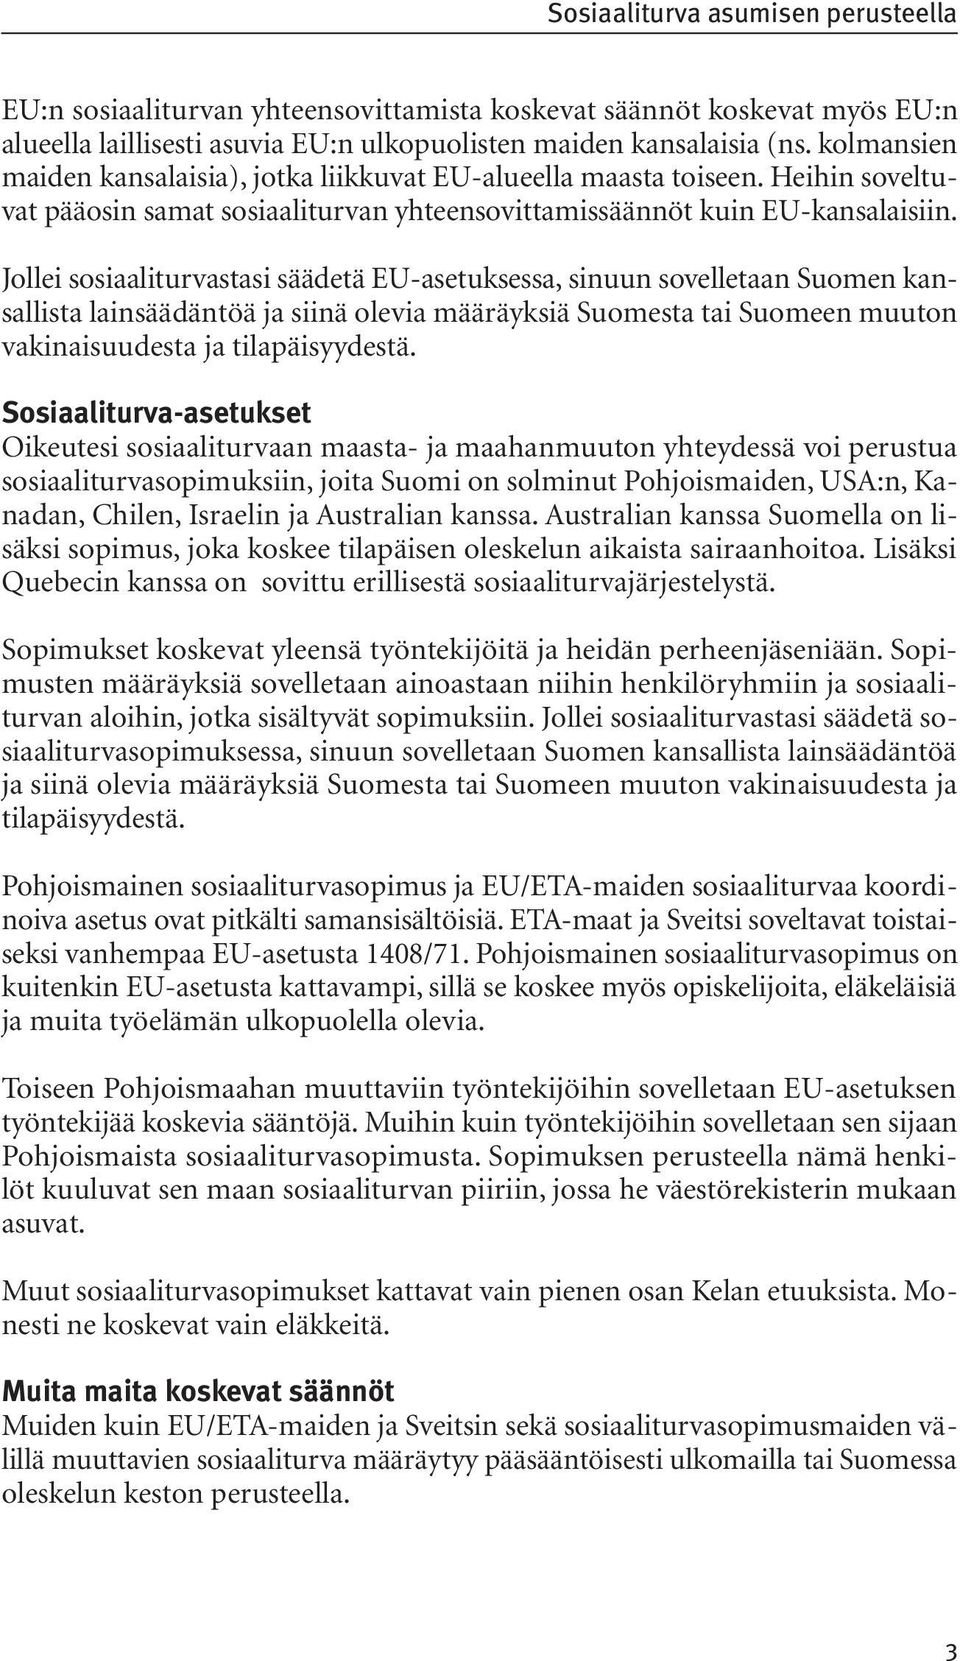 Jollei sosiaaliturvastasi säädetä EU-asetuksessa, sinuun sovelletaan Suomen kansallista lainsäädäntöä ja siinä olevia määräyksiä Suomesta tai Suomeen muuton vakinaisuudesta ja tilapäisyydestä.